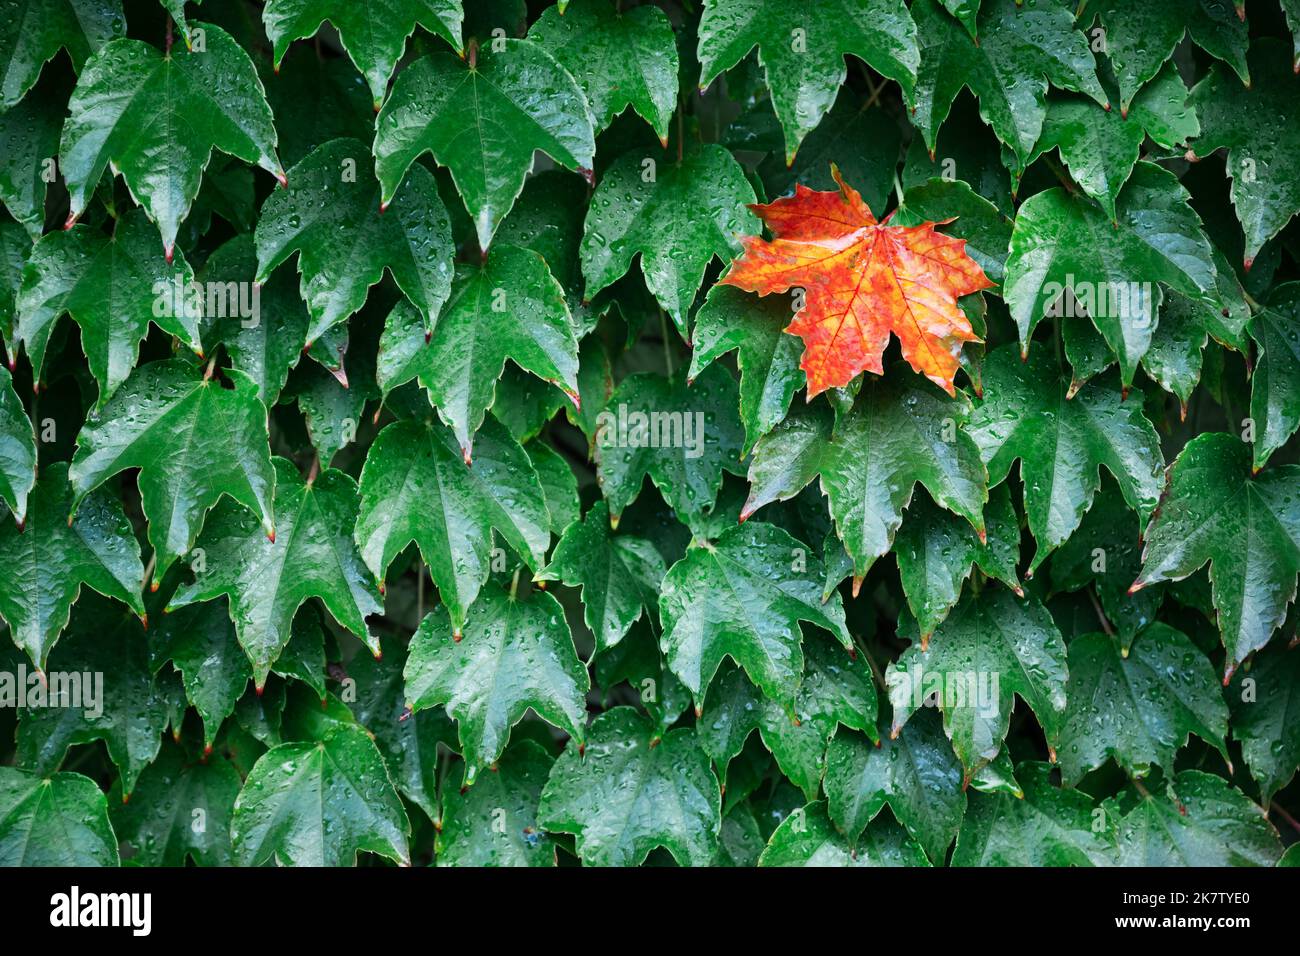 Nahaufnahme Natur Ansicht von Grün kreative Layout aus einzelnen orange Ahornblatt in grünen Blättern Wand. Copyspace machen Verwendung als natürliche grüne Pflanzen und Ökologie Hintergrund. Herbst Natur Hintergrund Stockfoto